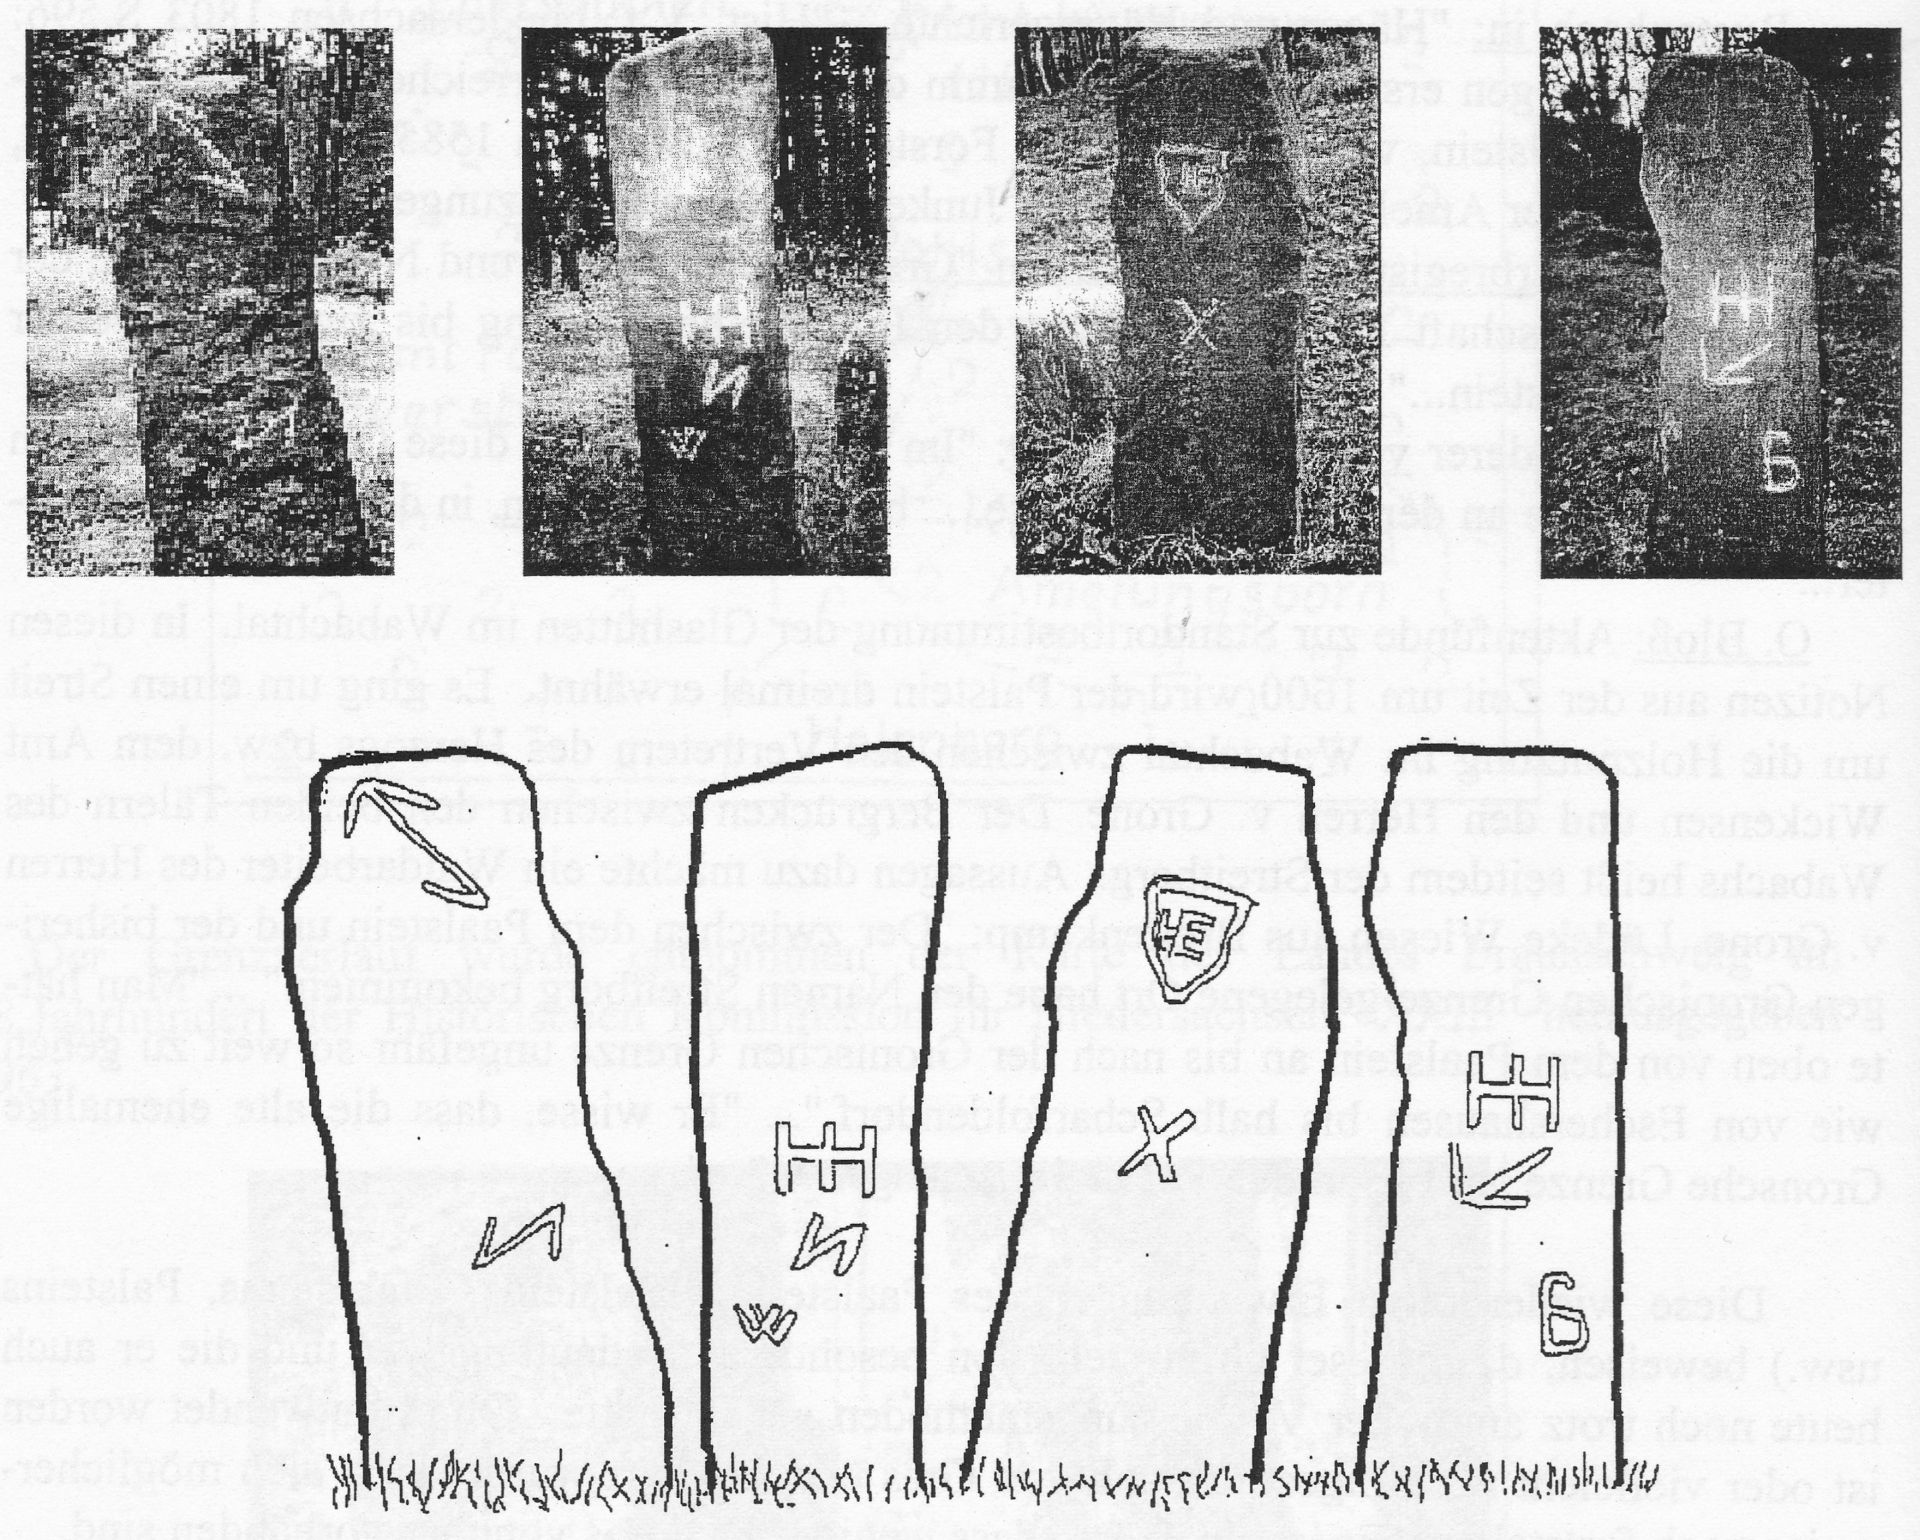 Bilder und Skizzen der vier Seiten des Schnatsteins auf dem Schnippkopf